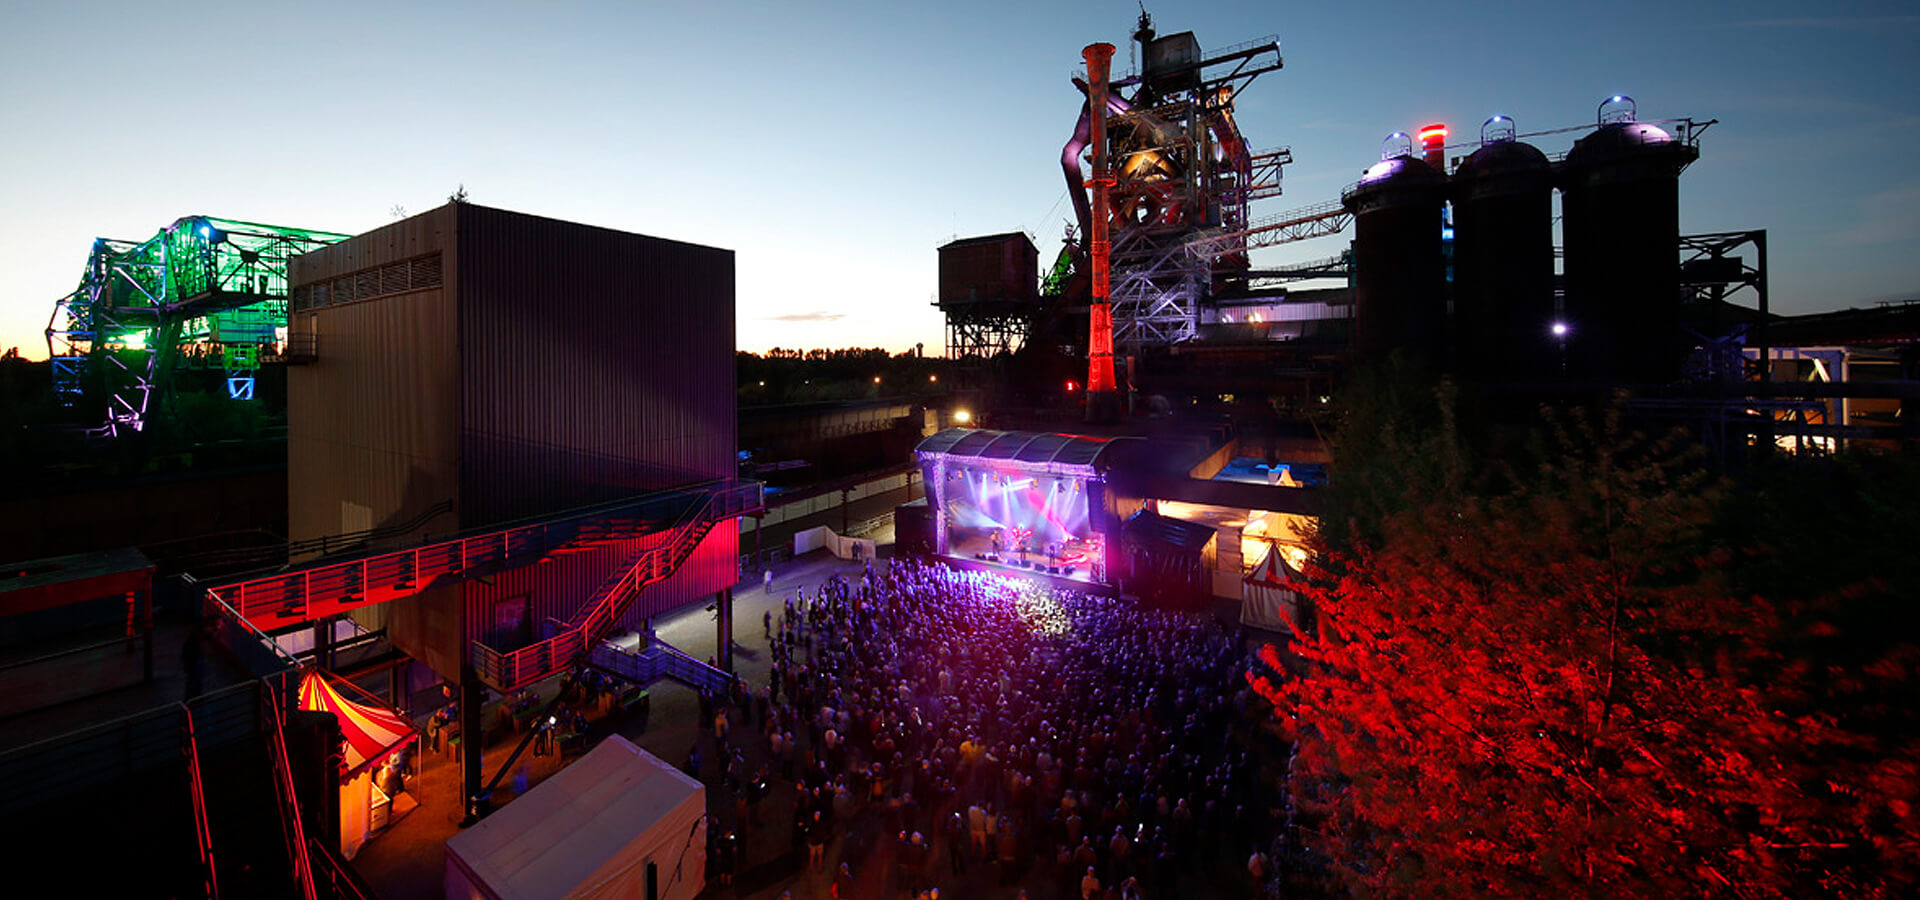 Das Bild zeigt den Landschaftspark Duisburg-Nord beim Traumzeitfestival